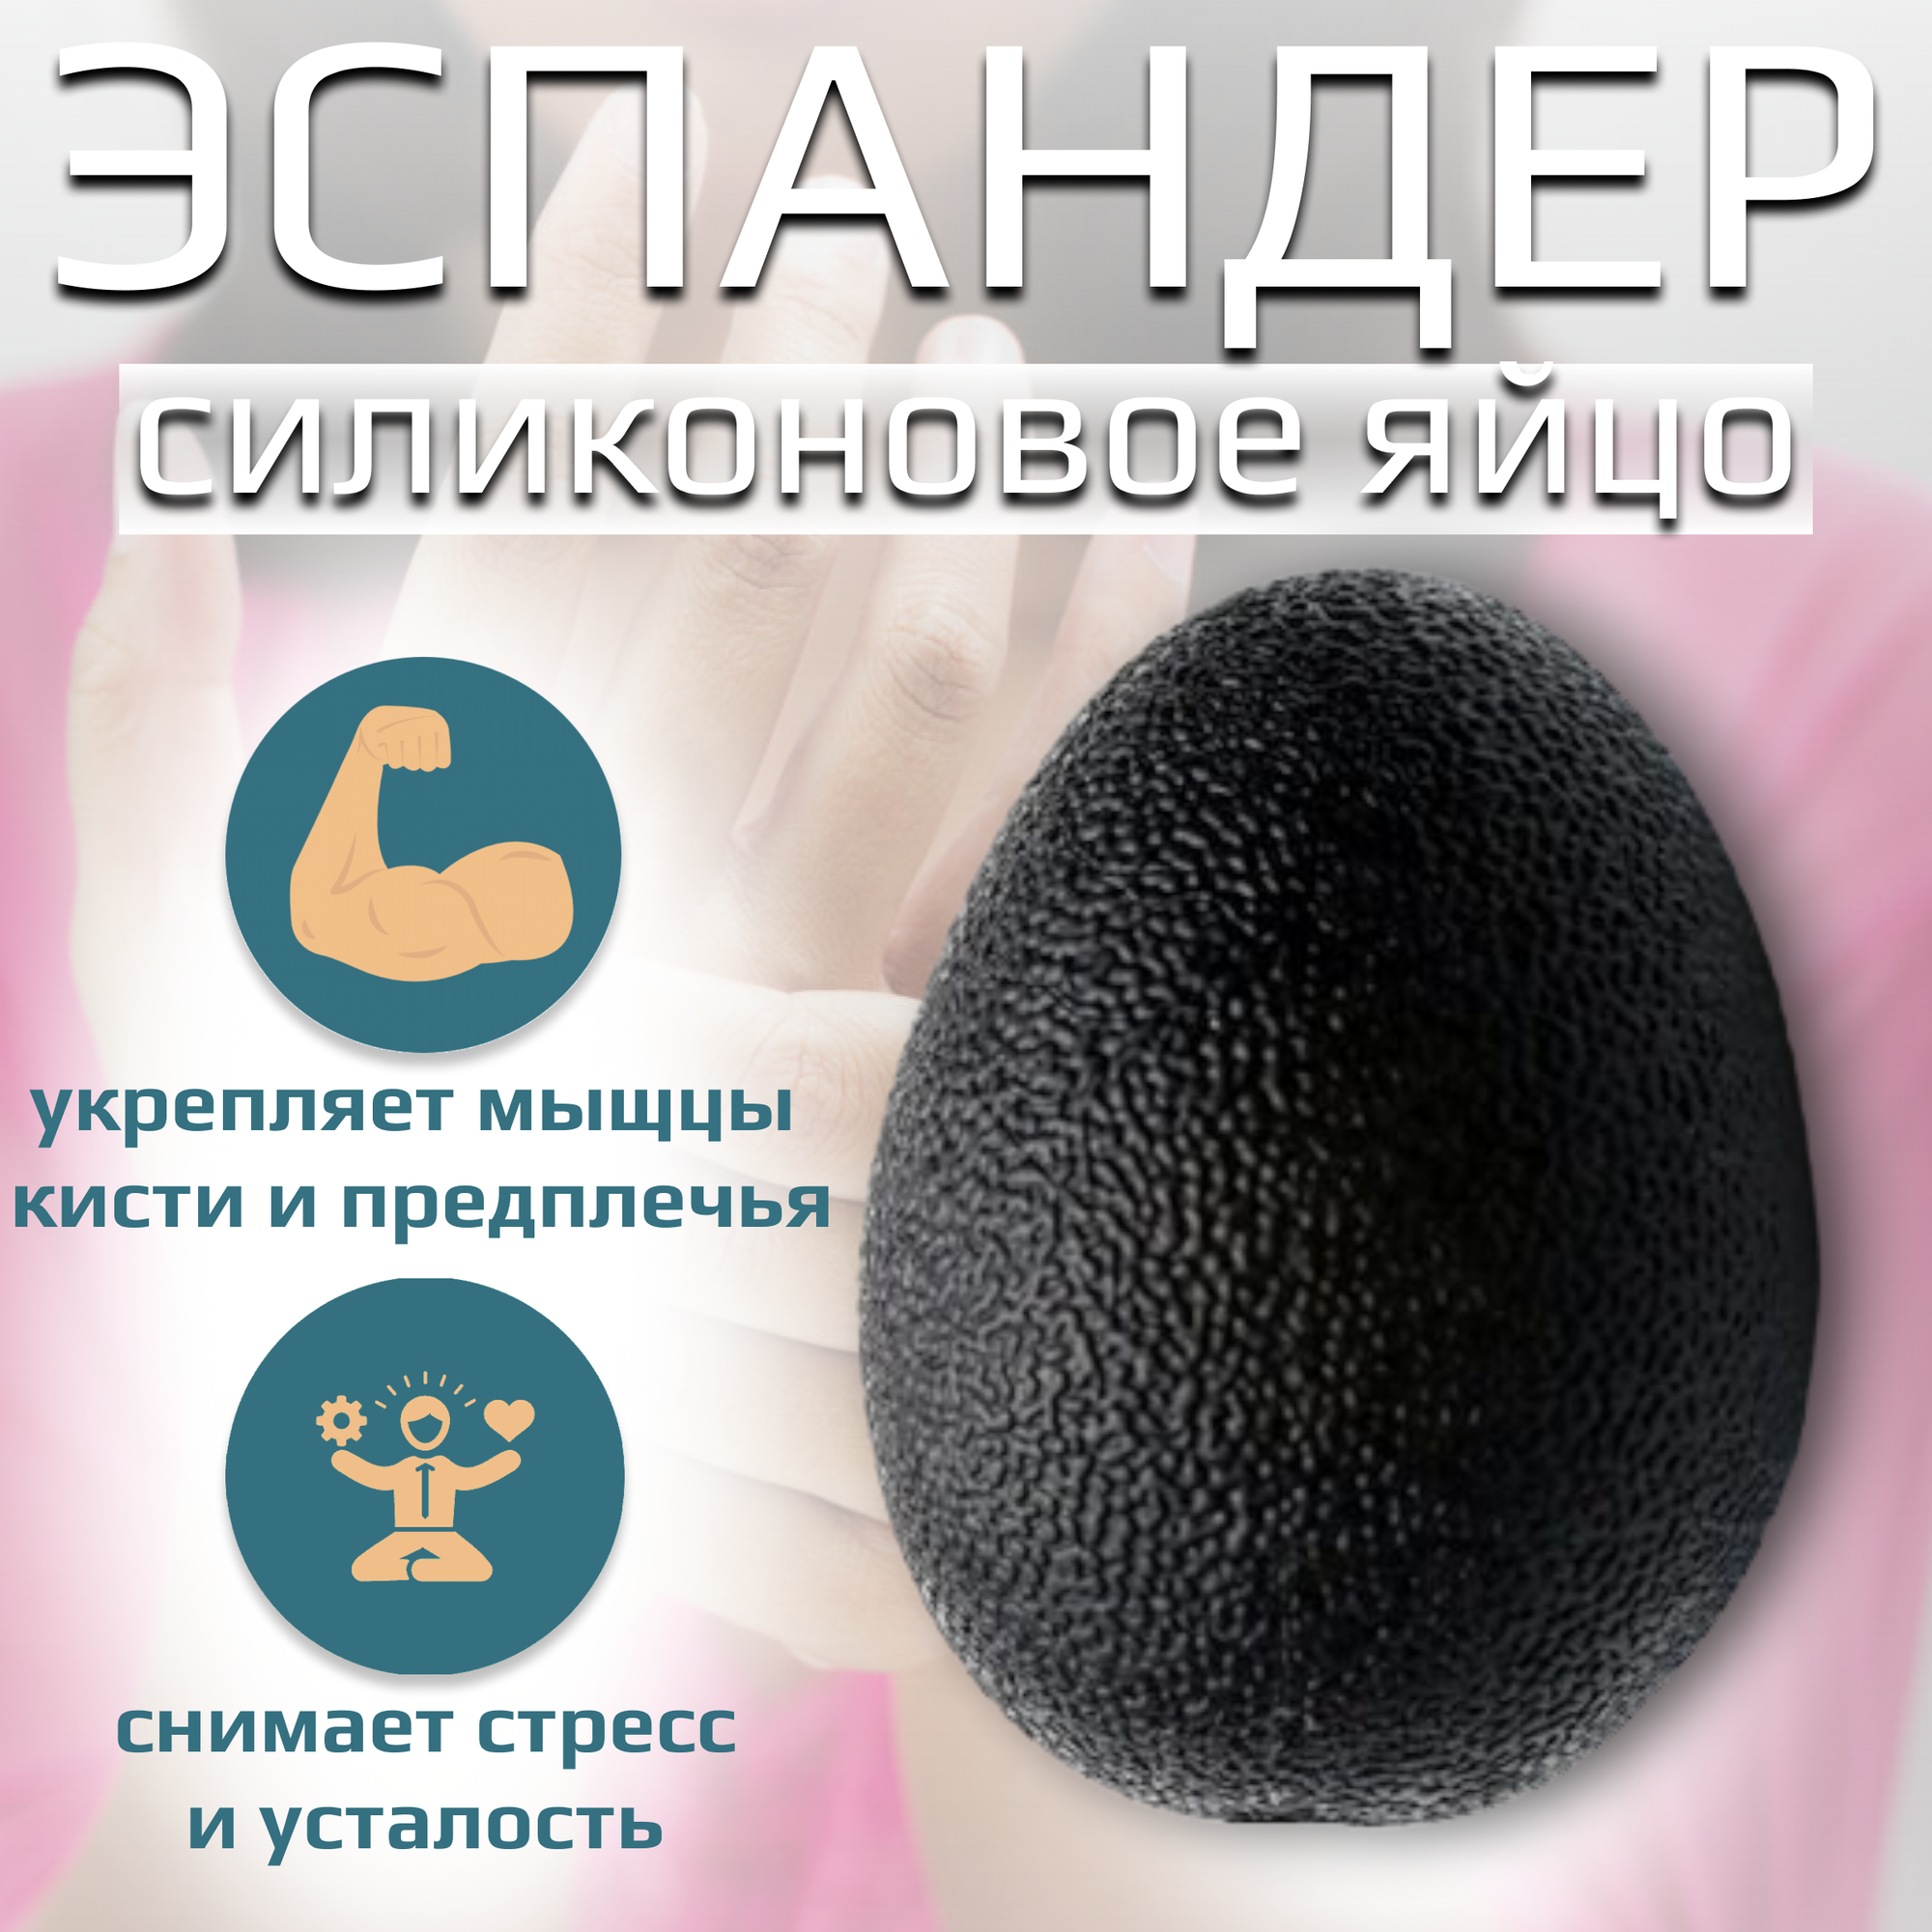 Яйцо силиконовое, фитнес-тренажер для пальцев рук, цвет черный